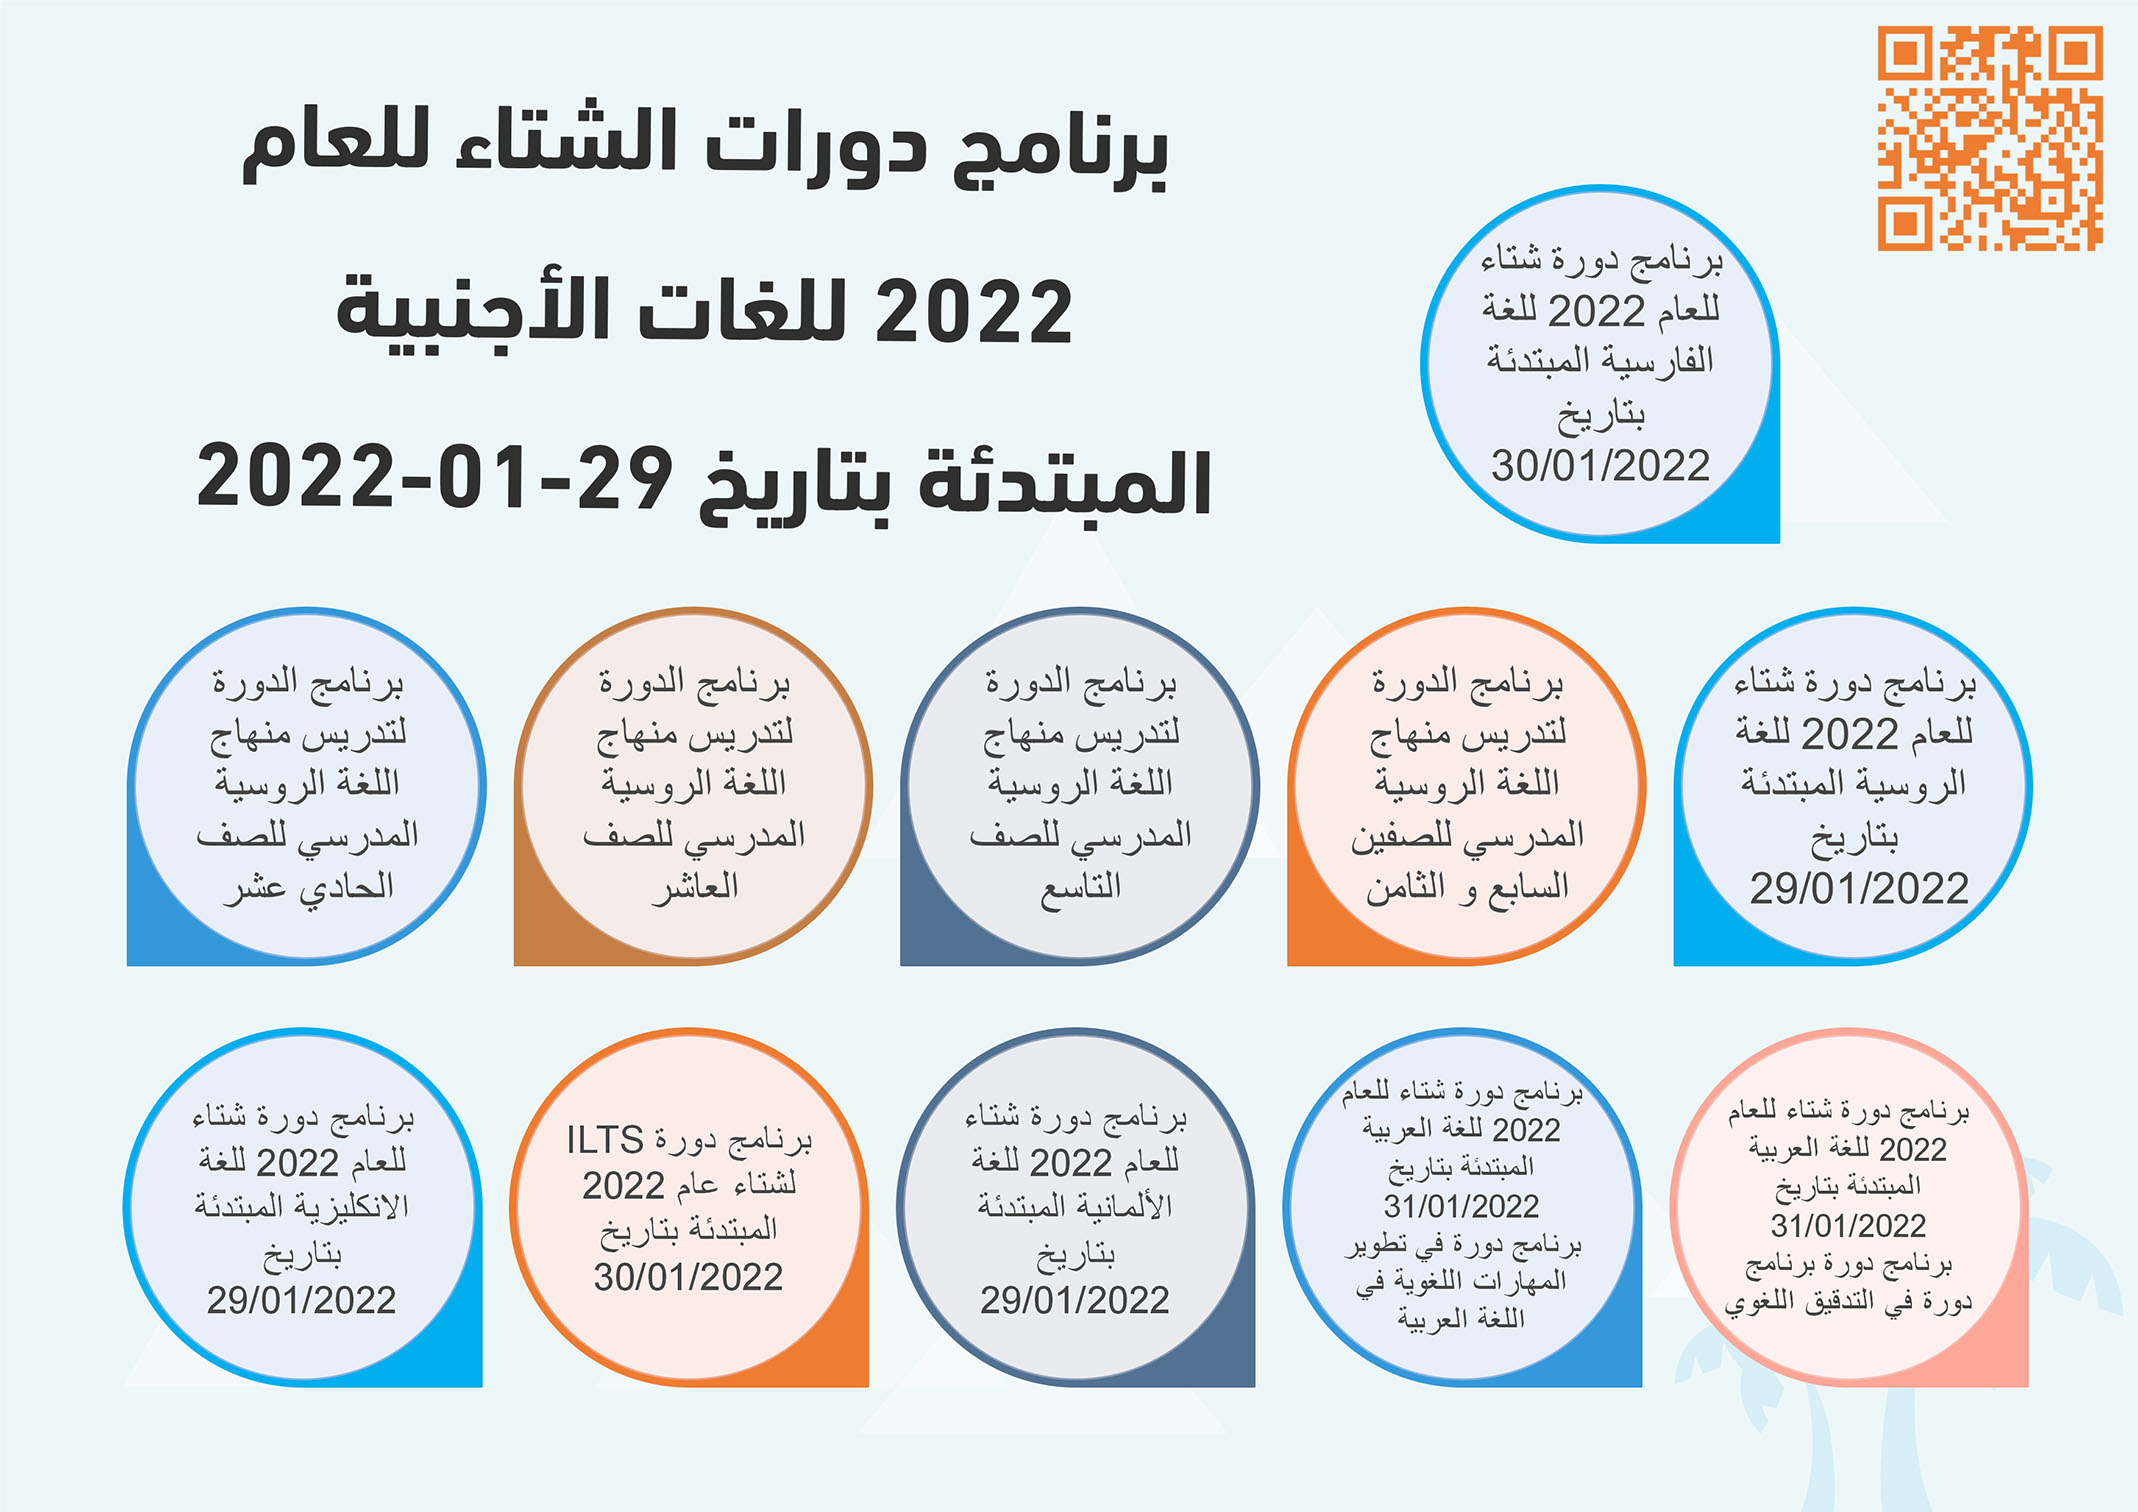 برنامج دورات الشتاء للعام 2022 للغات الأجنبية المبتدئة بتاريخ 29-01-2022